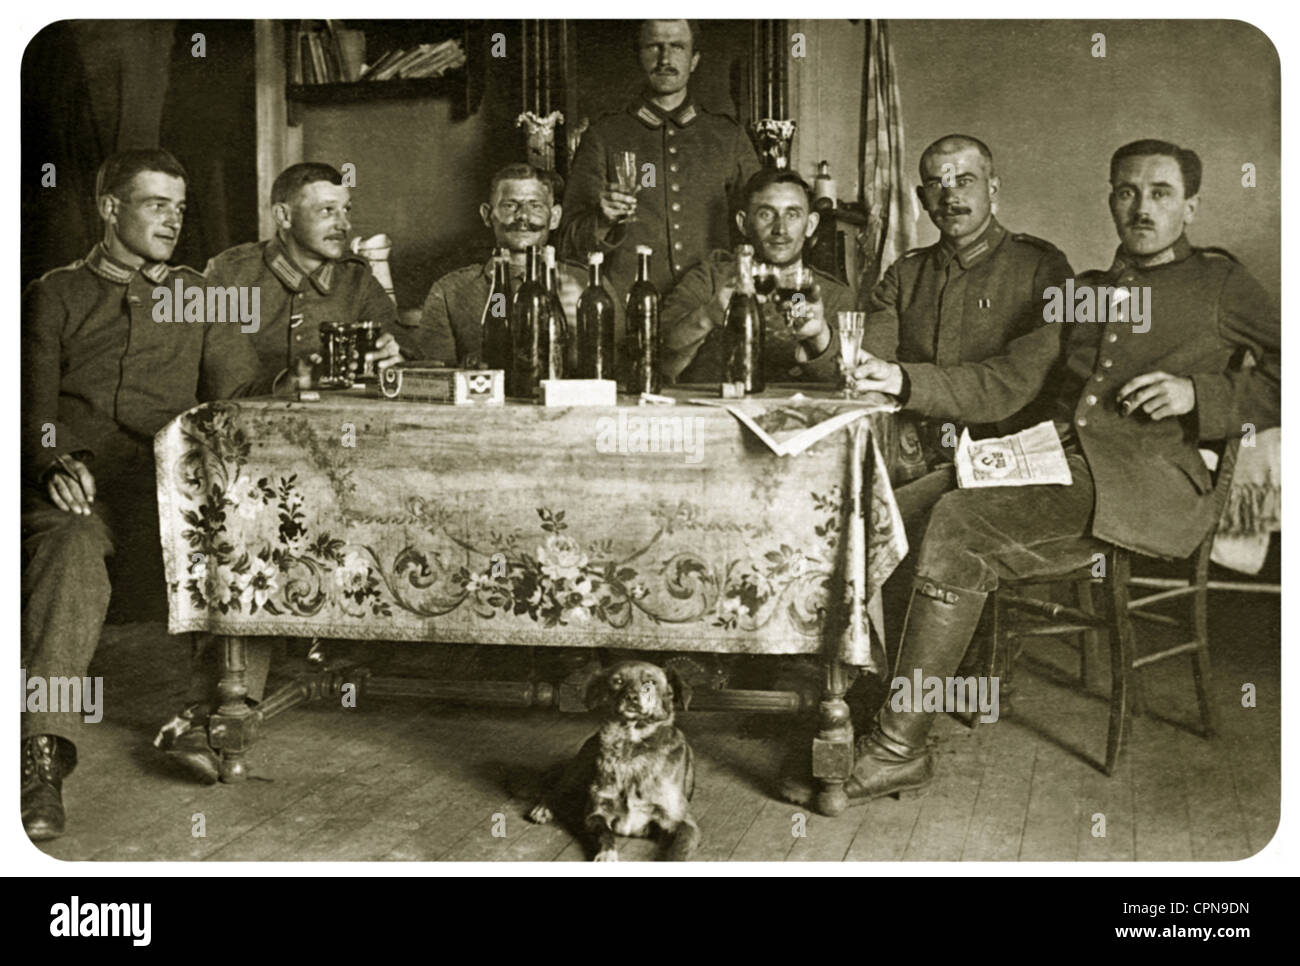 Première Guerre mondiale / première Guerre mondiale, Allemagne, officiers allemands dans la salle des porteurs, Allemagne, vers 1915, droits additionnels-Clearences-non disponible Banque D'Images